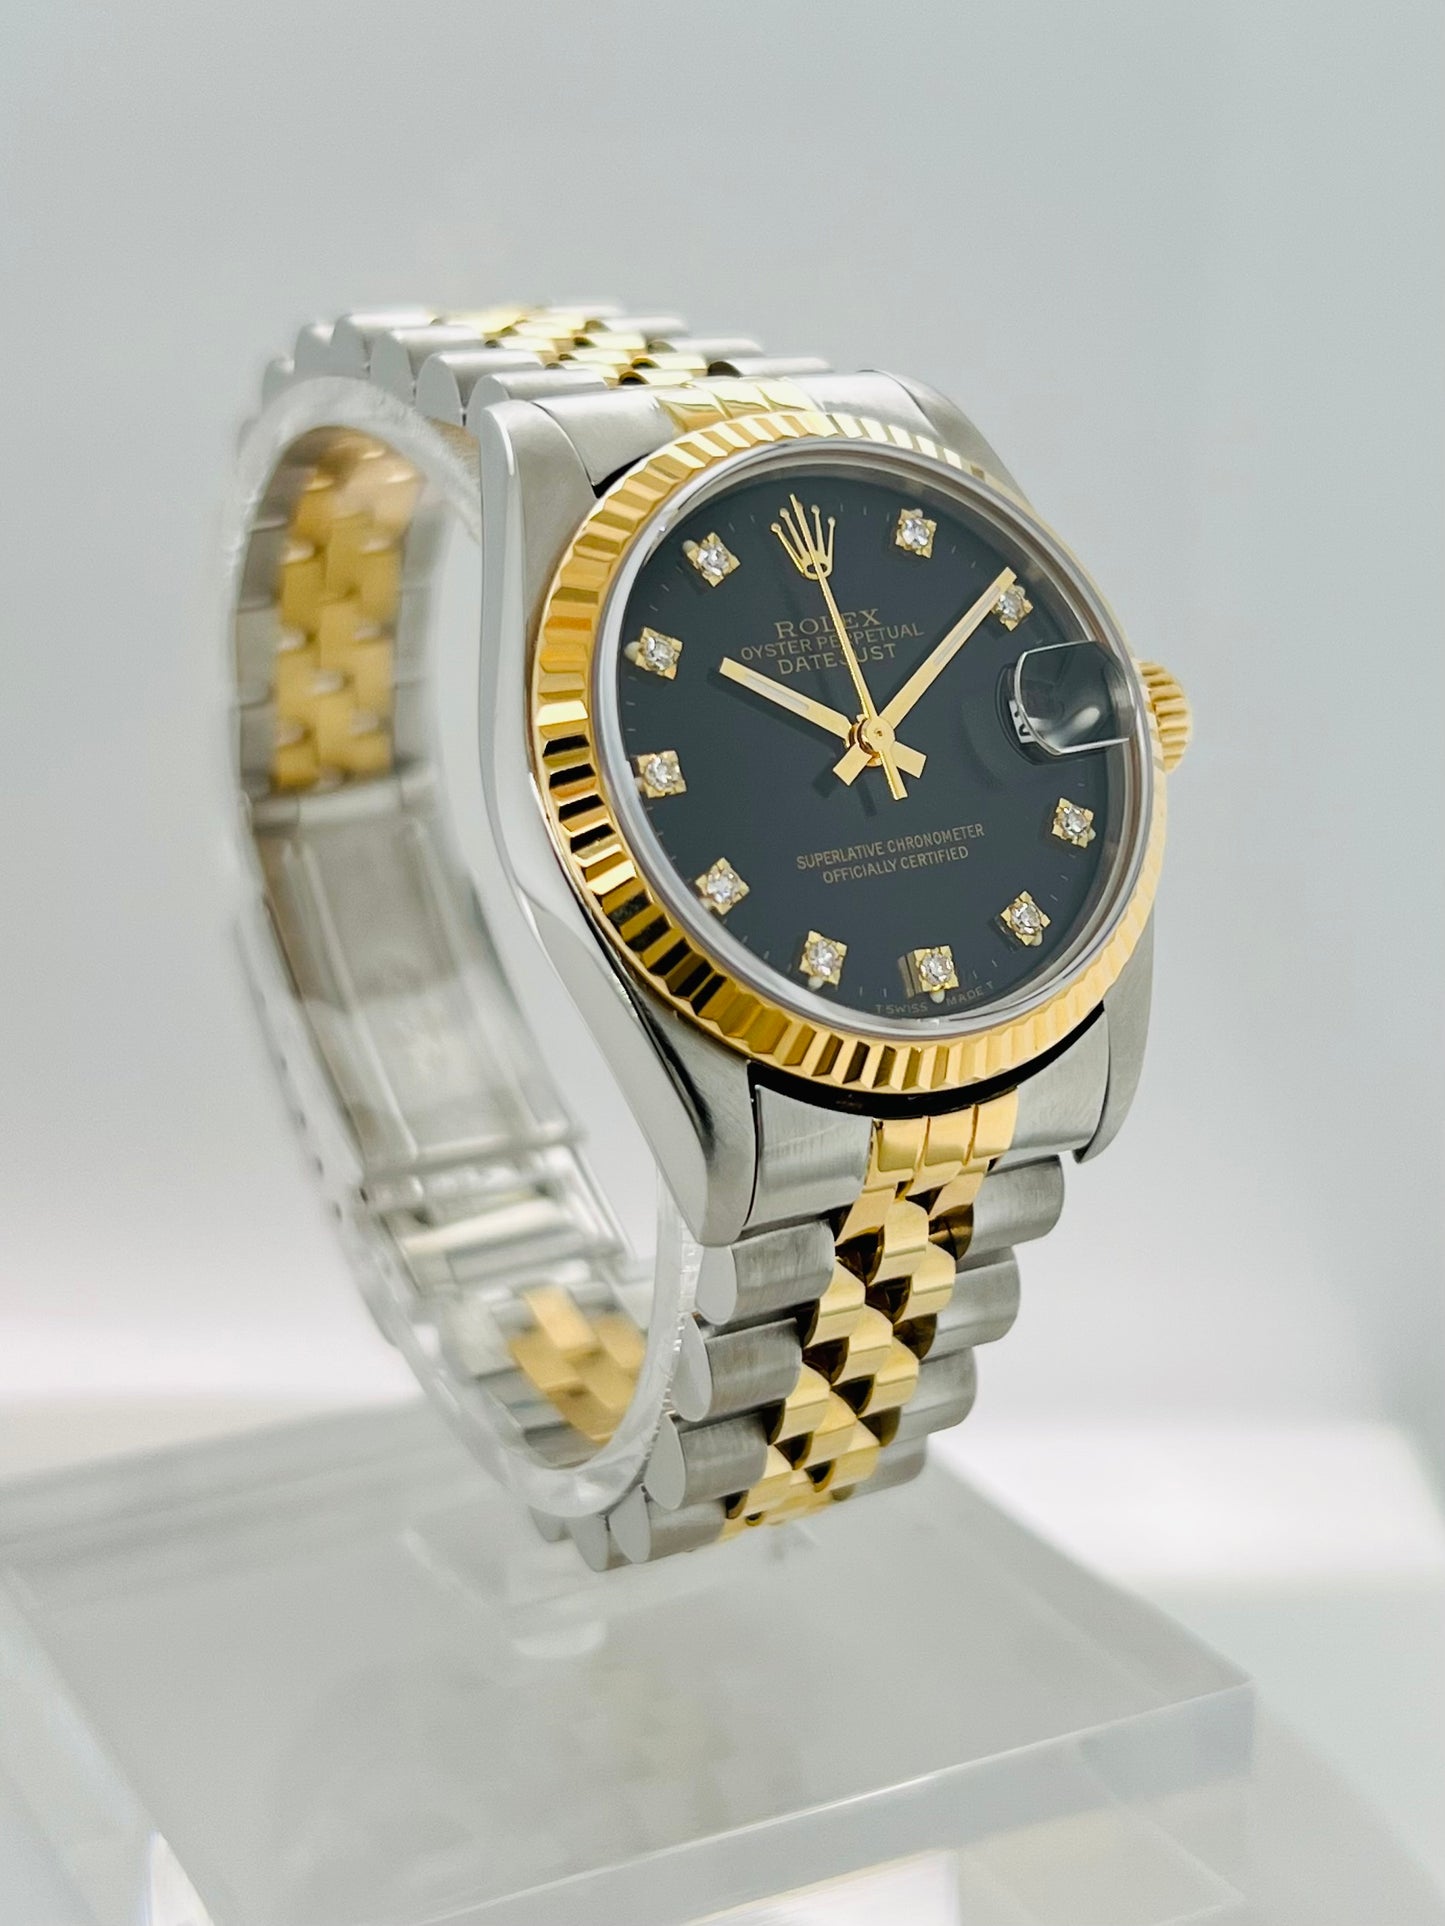 Rolex Datejust 31mm Black Dial Gold & Steel Women's Watch Model # 68273